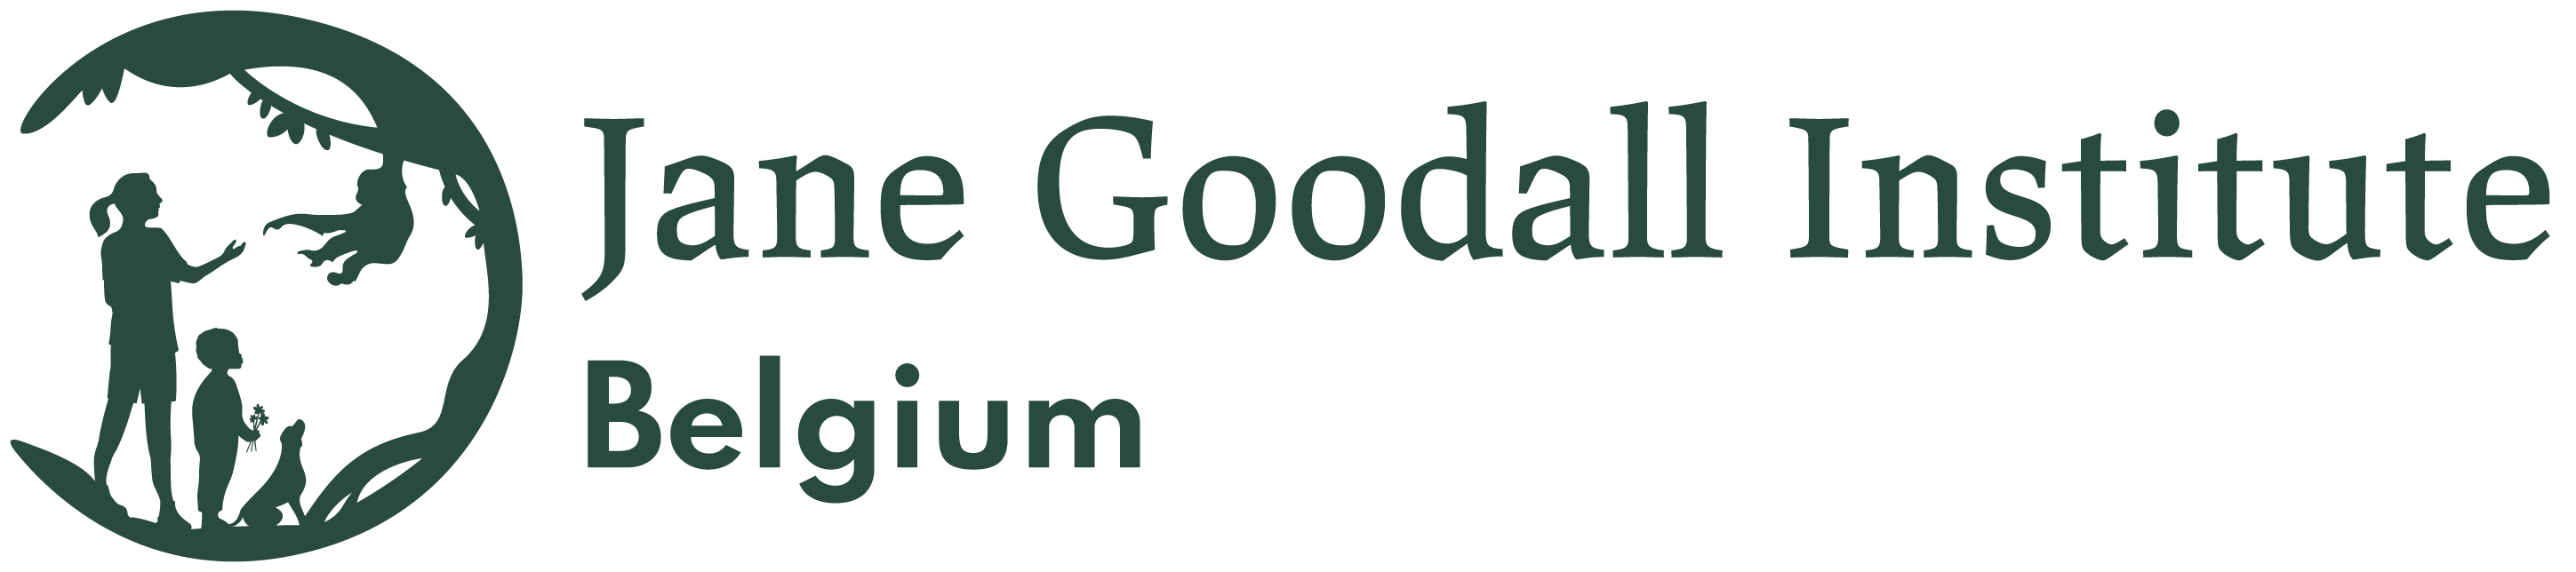 Jane Goodall Institute Belgium logo